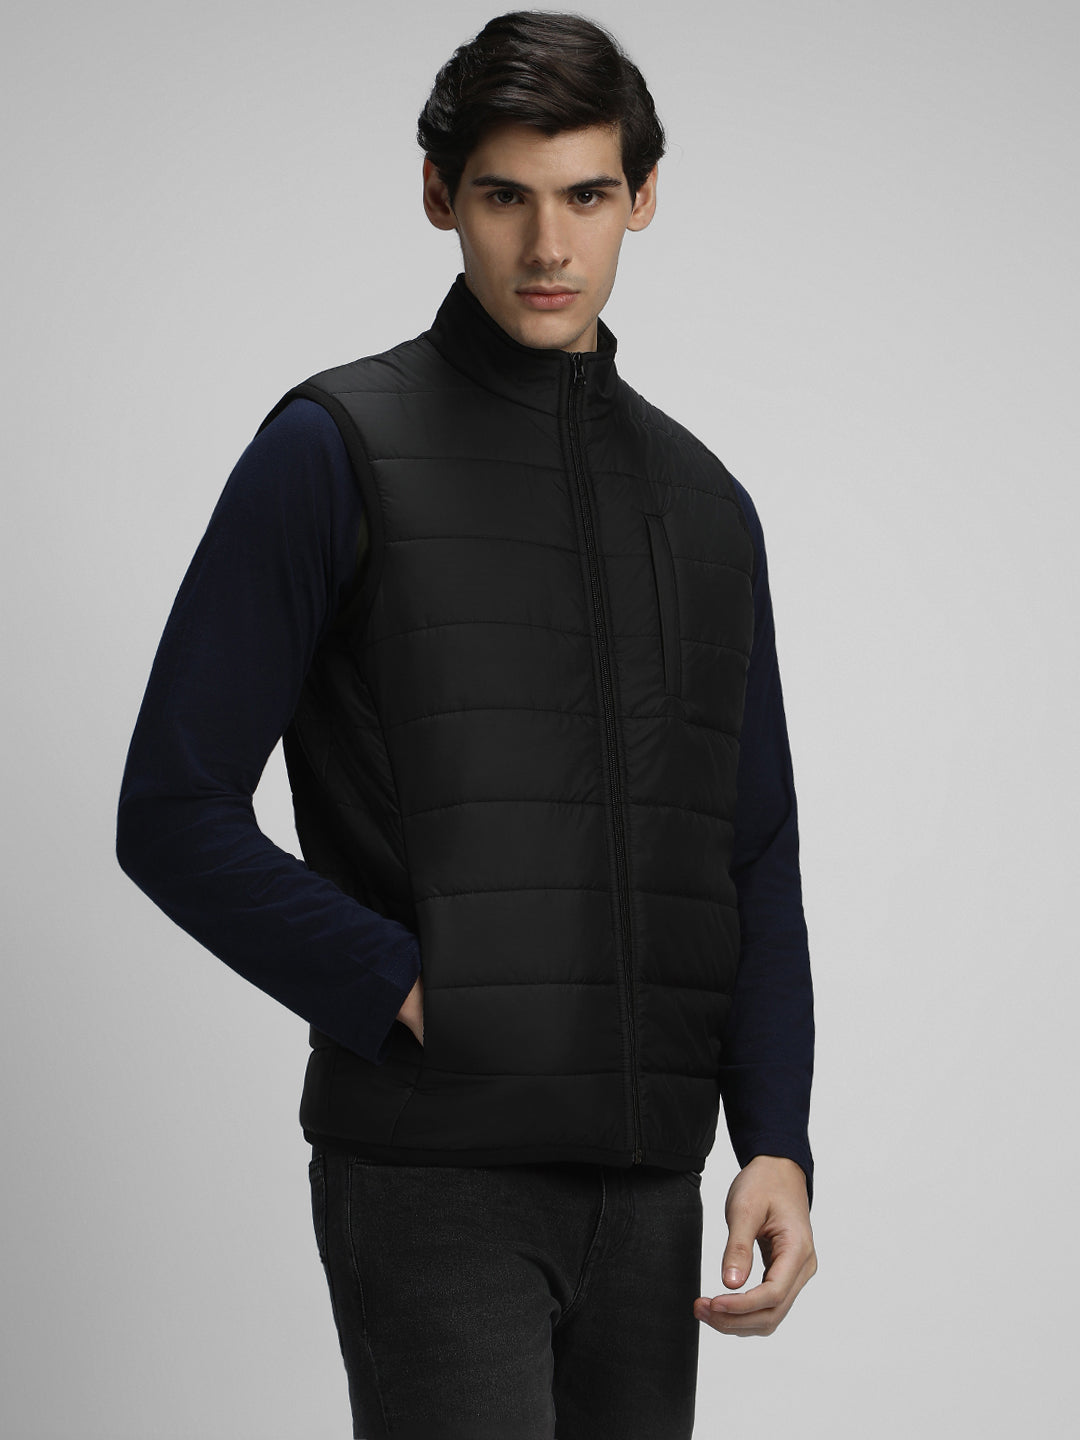 Dennis Lingo Men's Black Solid Quilted High Neck Full Sleeve Gillet Jackets